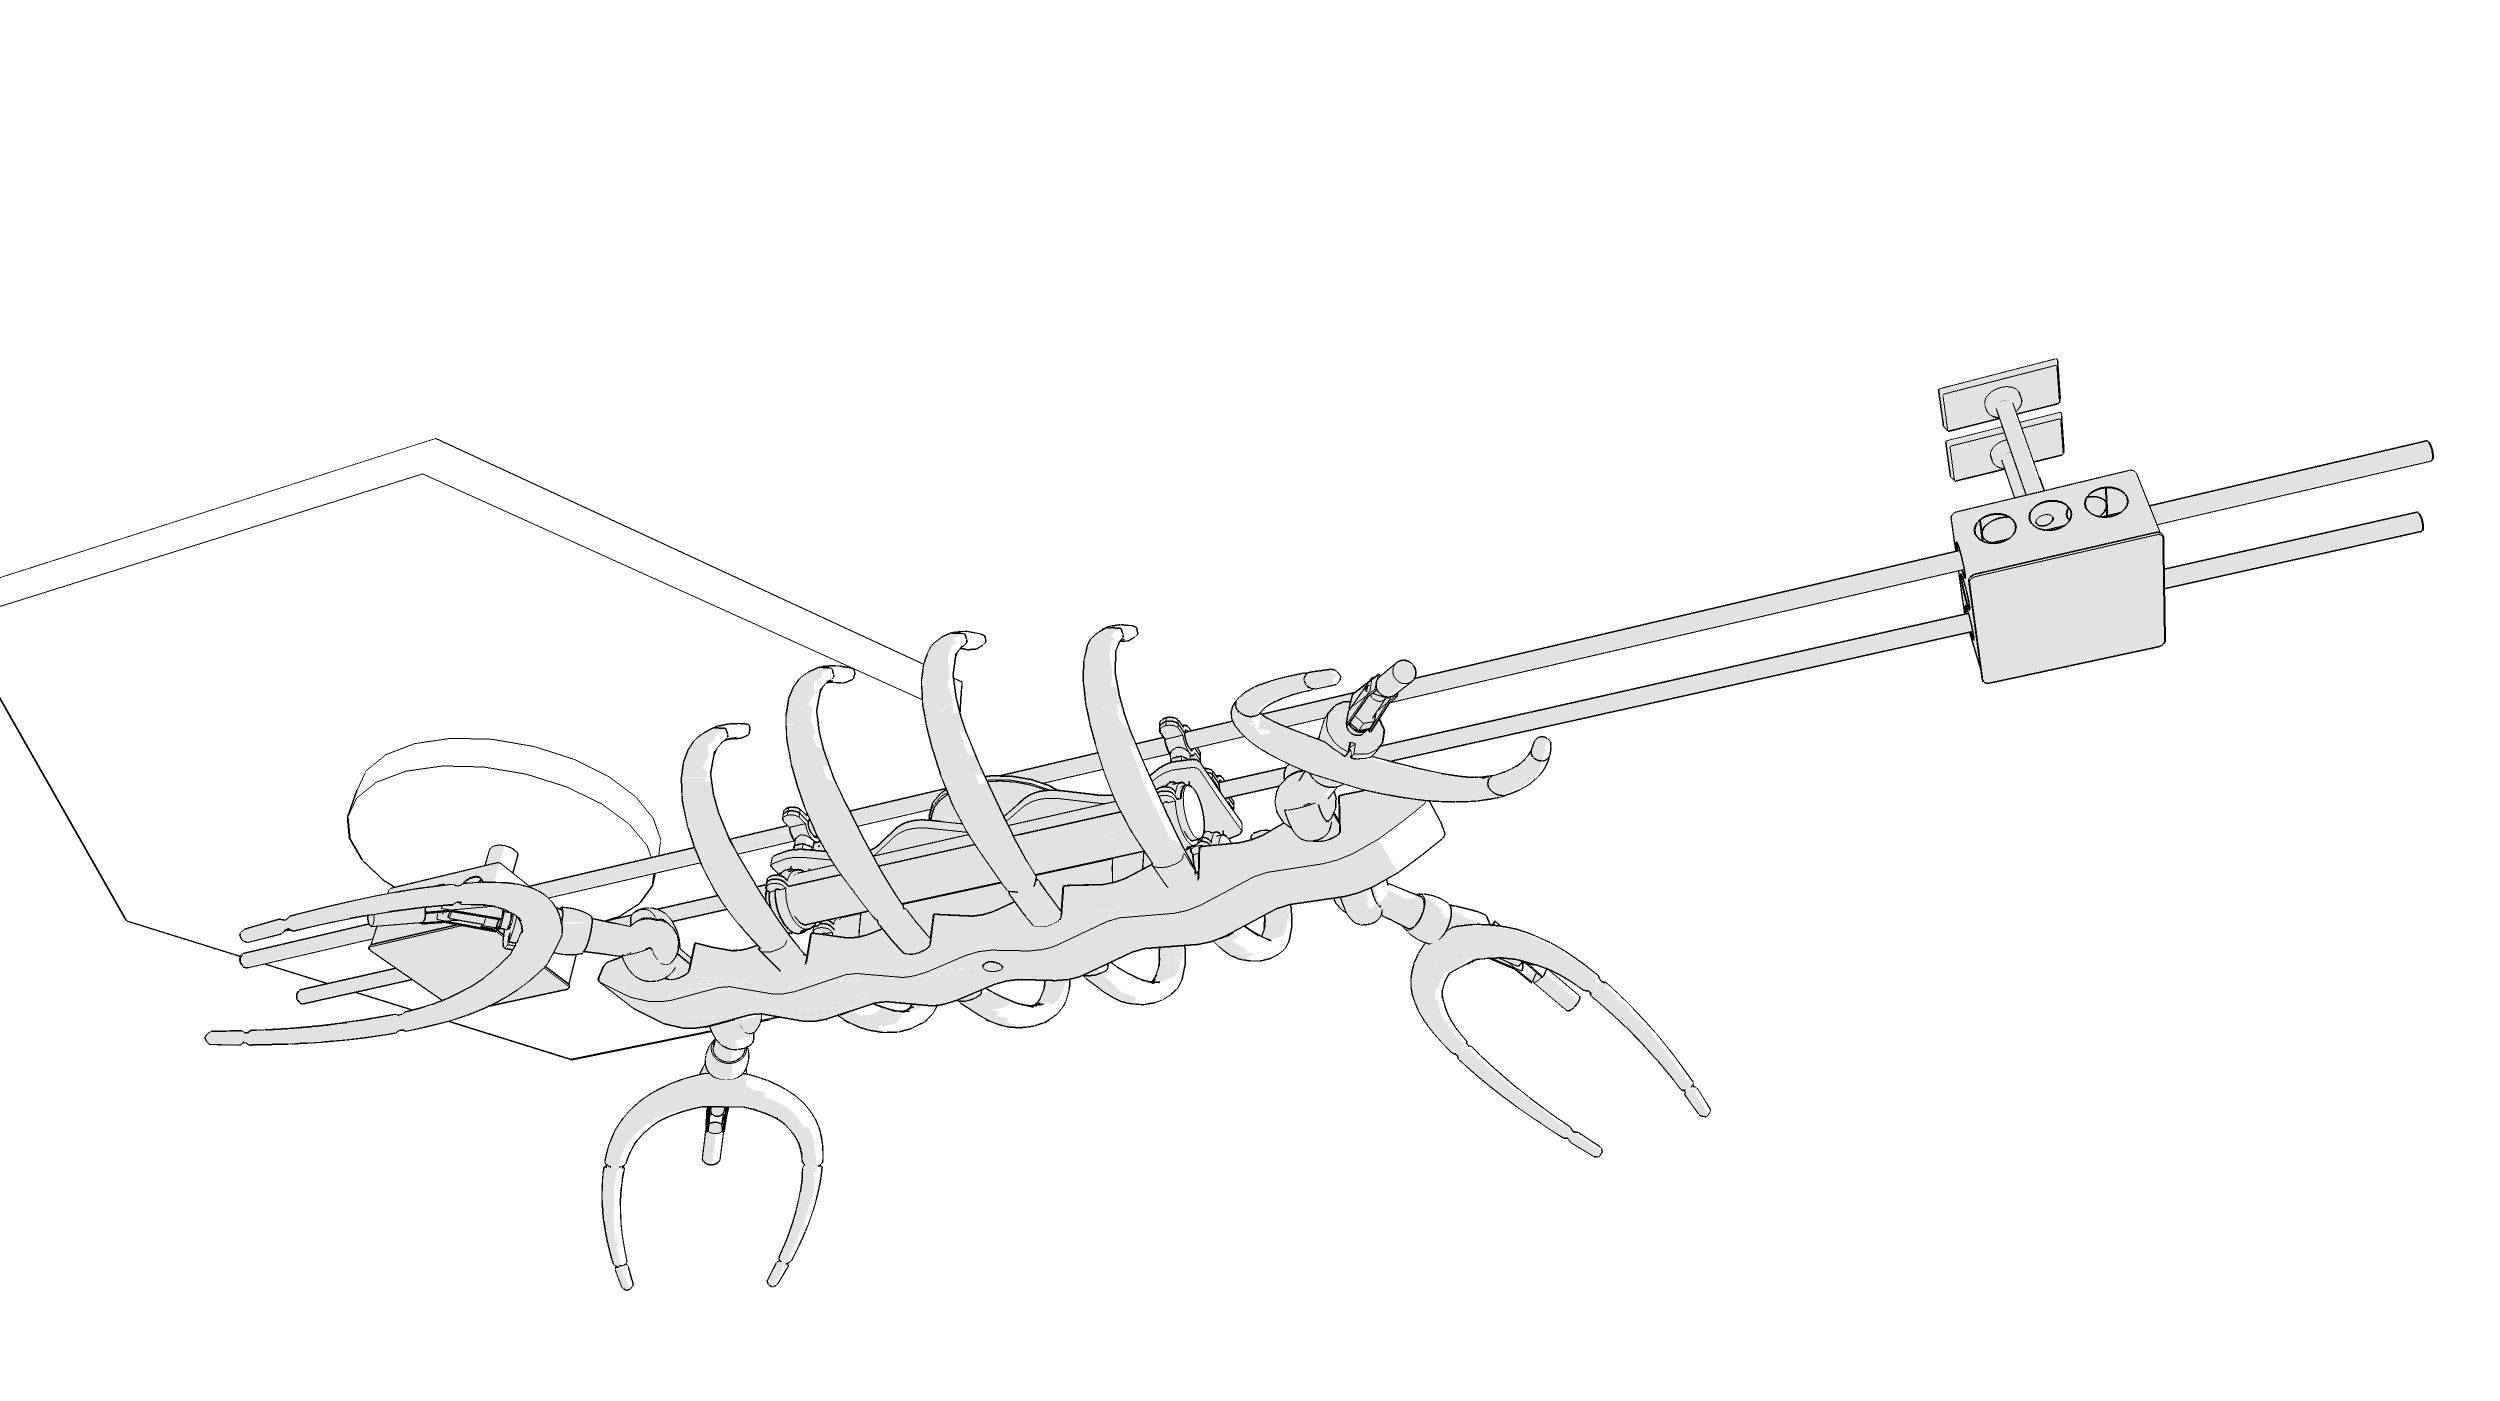 Plesiosaur, v9 concept (2011)